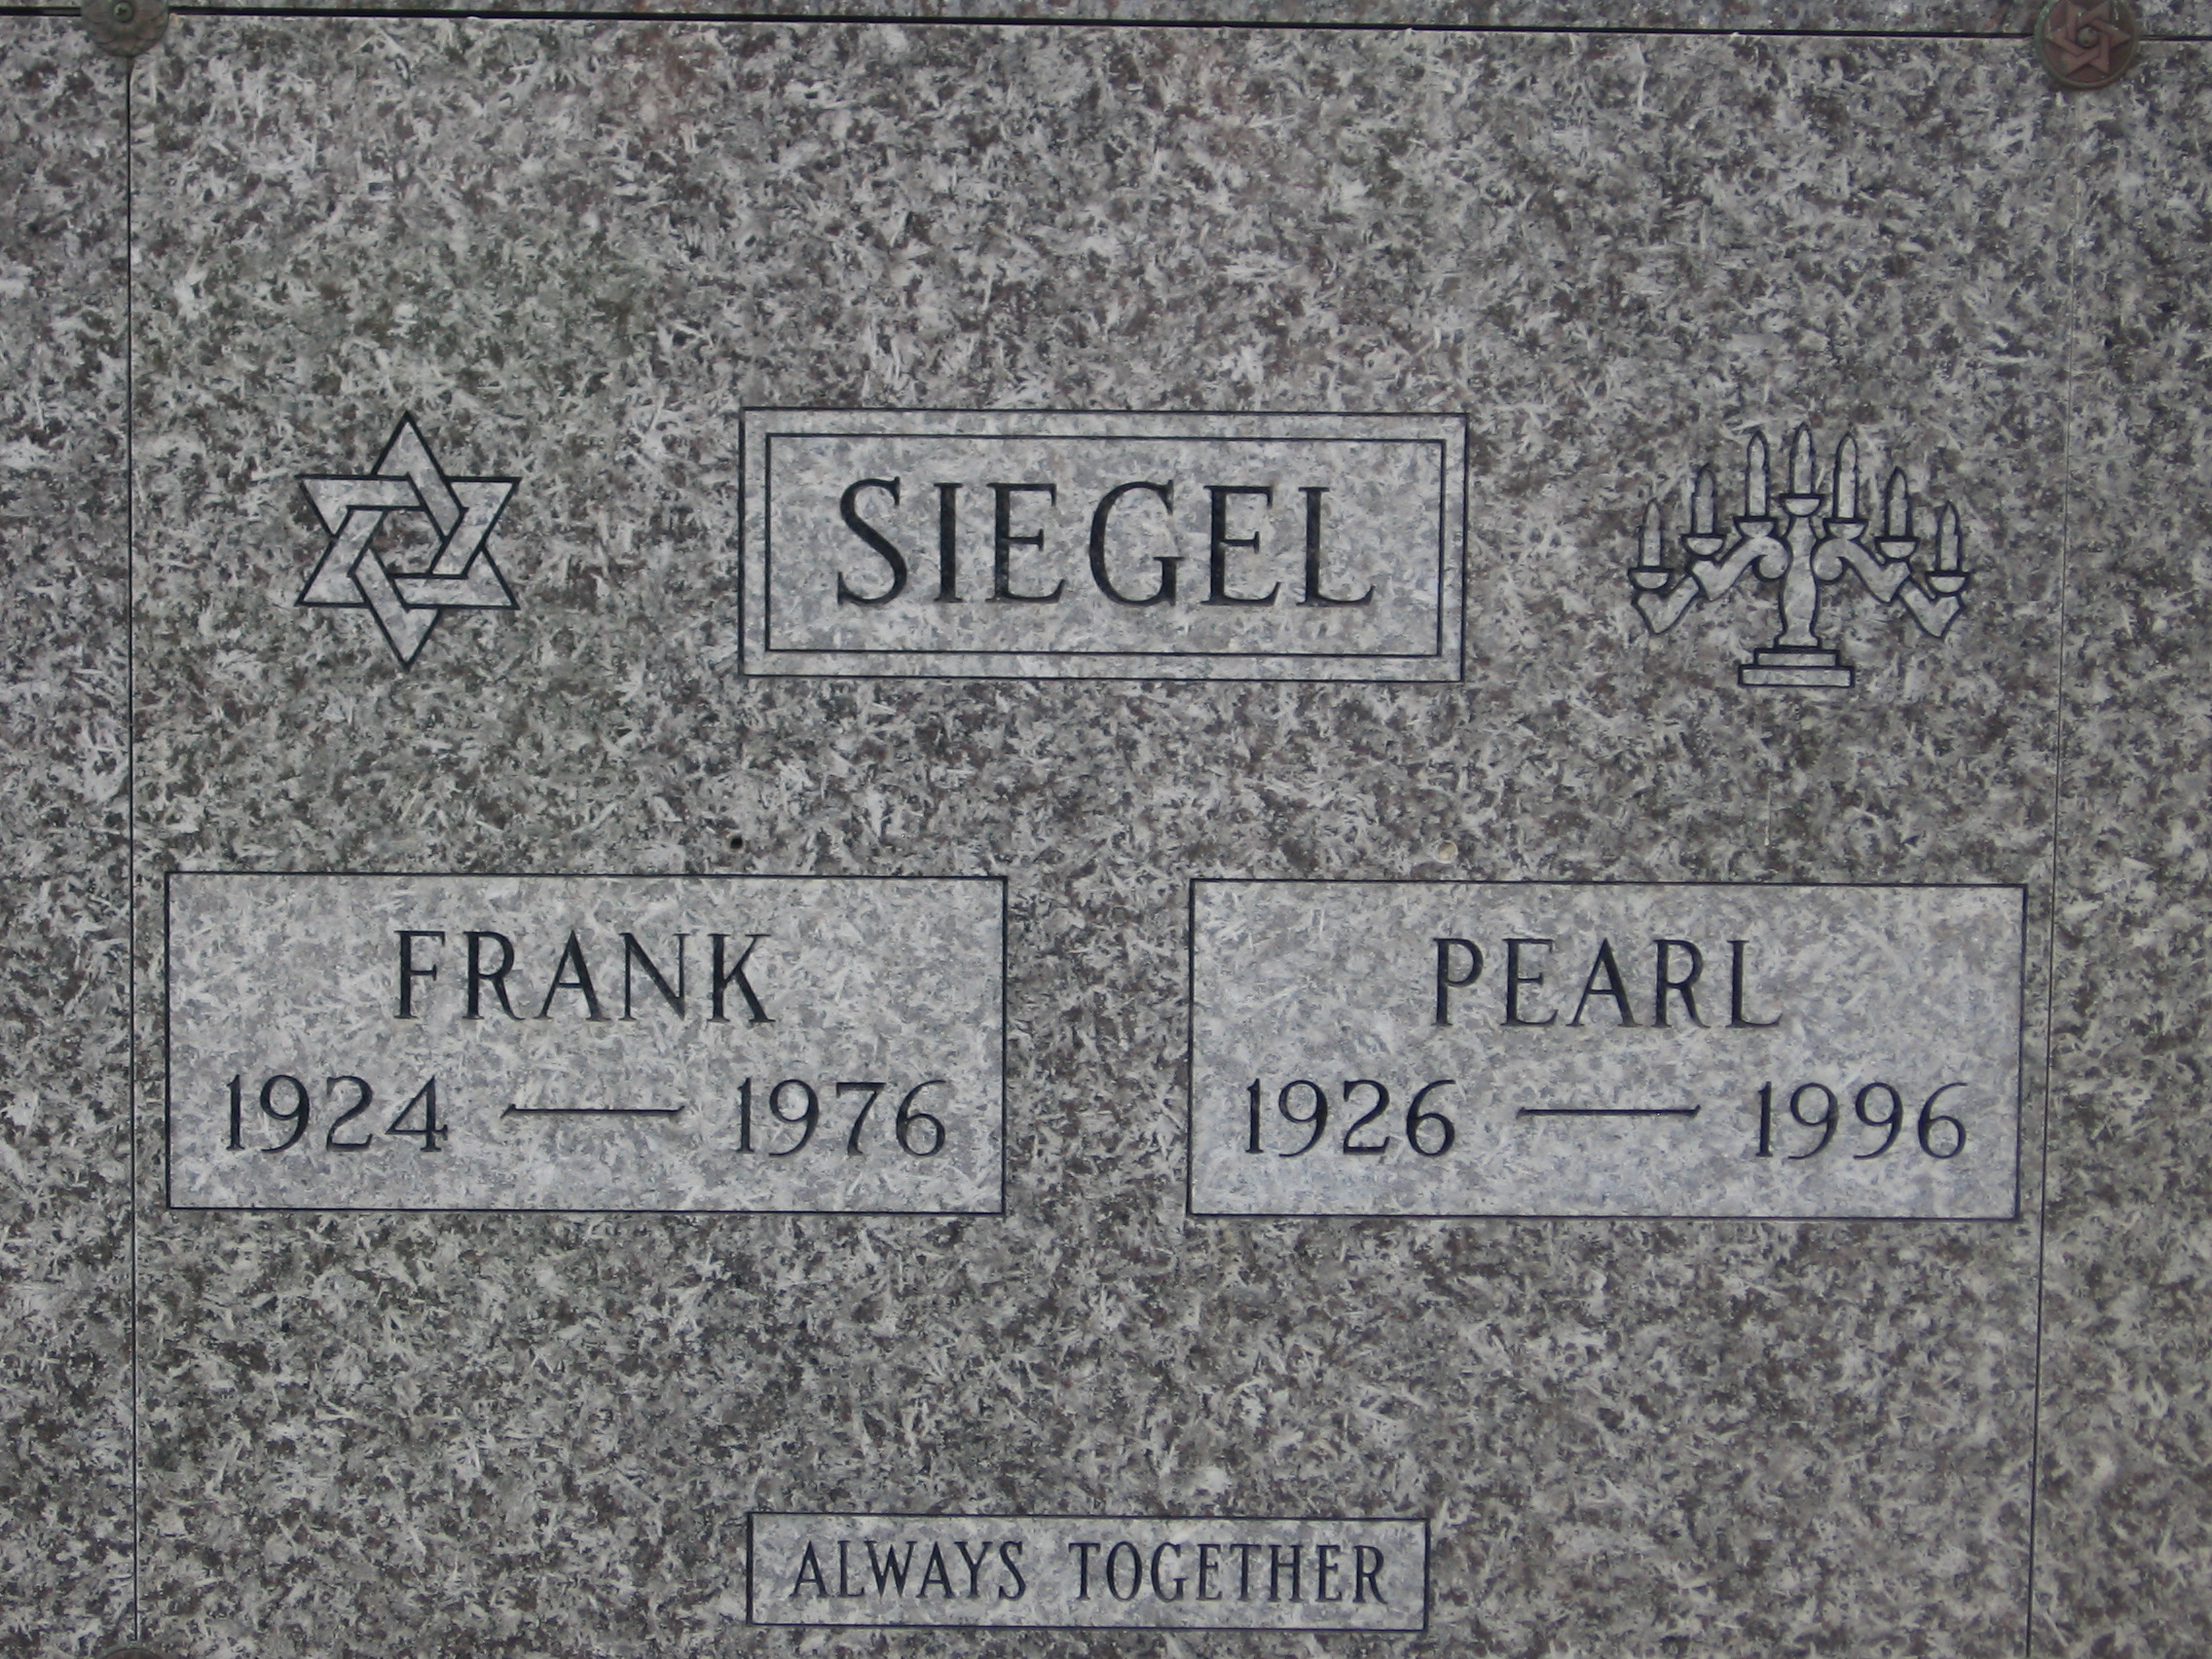 Pearl Siegel